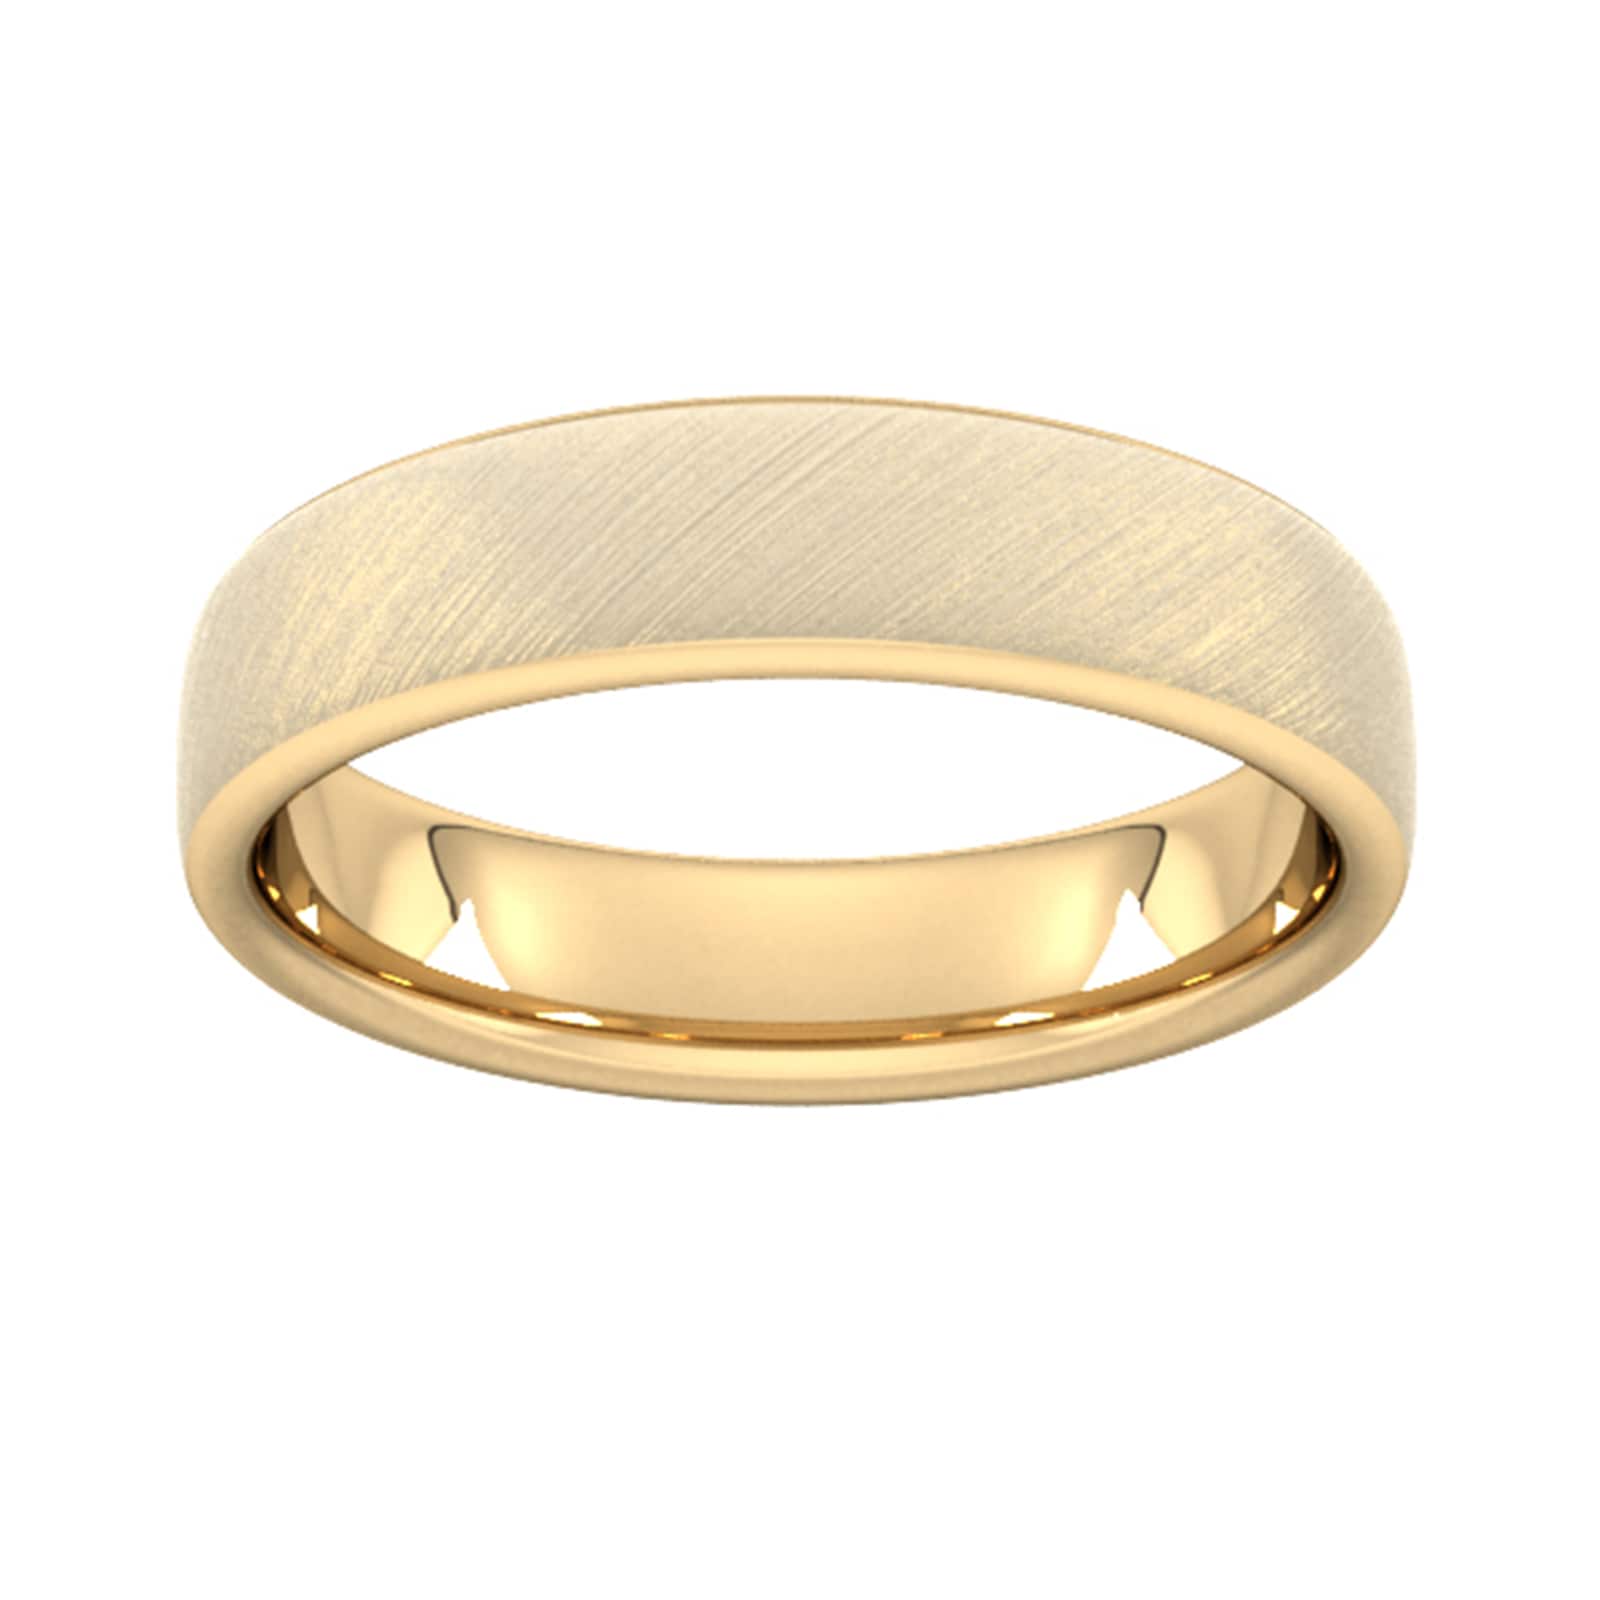 5mm Slight Court Heavy Diagonal Matt Finish Wedding Ring In 18 Carat Yellow Gold - Ring Size S